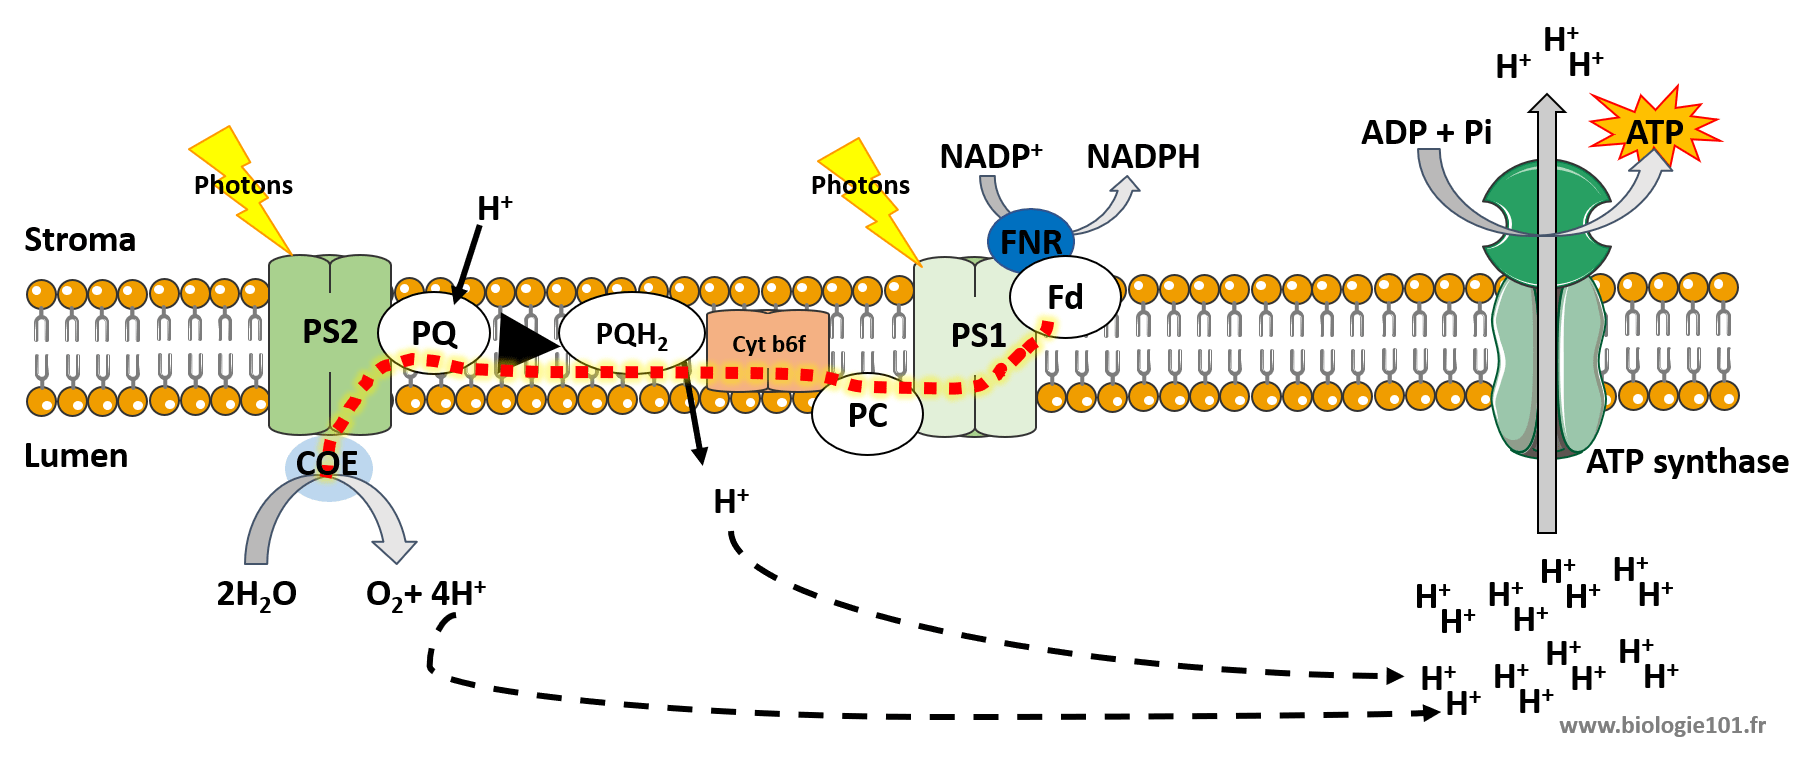 Synthèse d'ATP lors de la photosynthèse. Formation d'un gradient de proton lors de la photosynthèse qui va permettre la formation d'ATP à l'aide de l'ATP synthase.